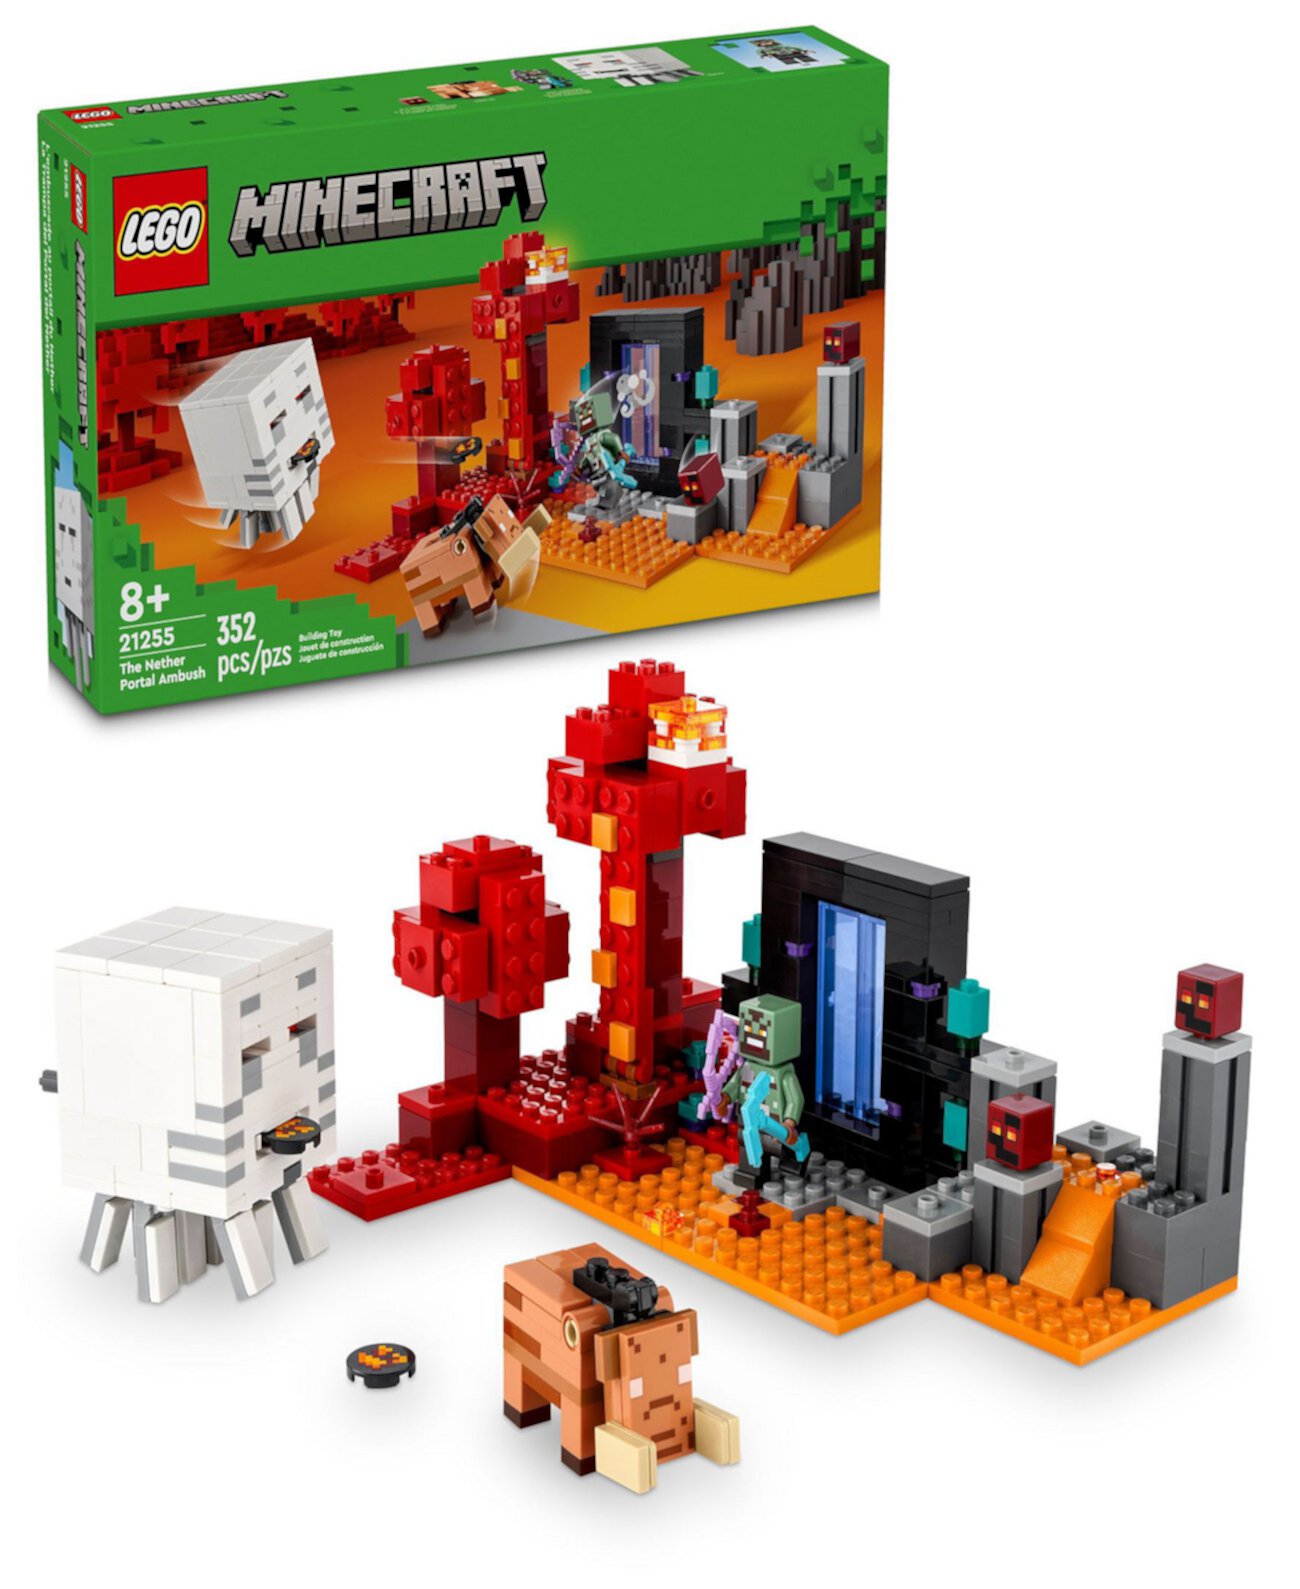 Игрушка Minecraft the Nether Portal Ambush Building 21255, 352 детали Lego